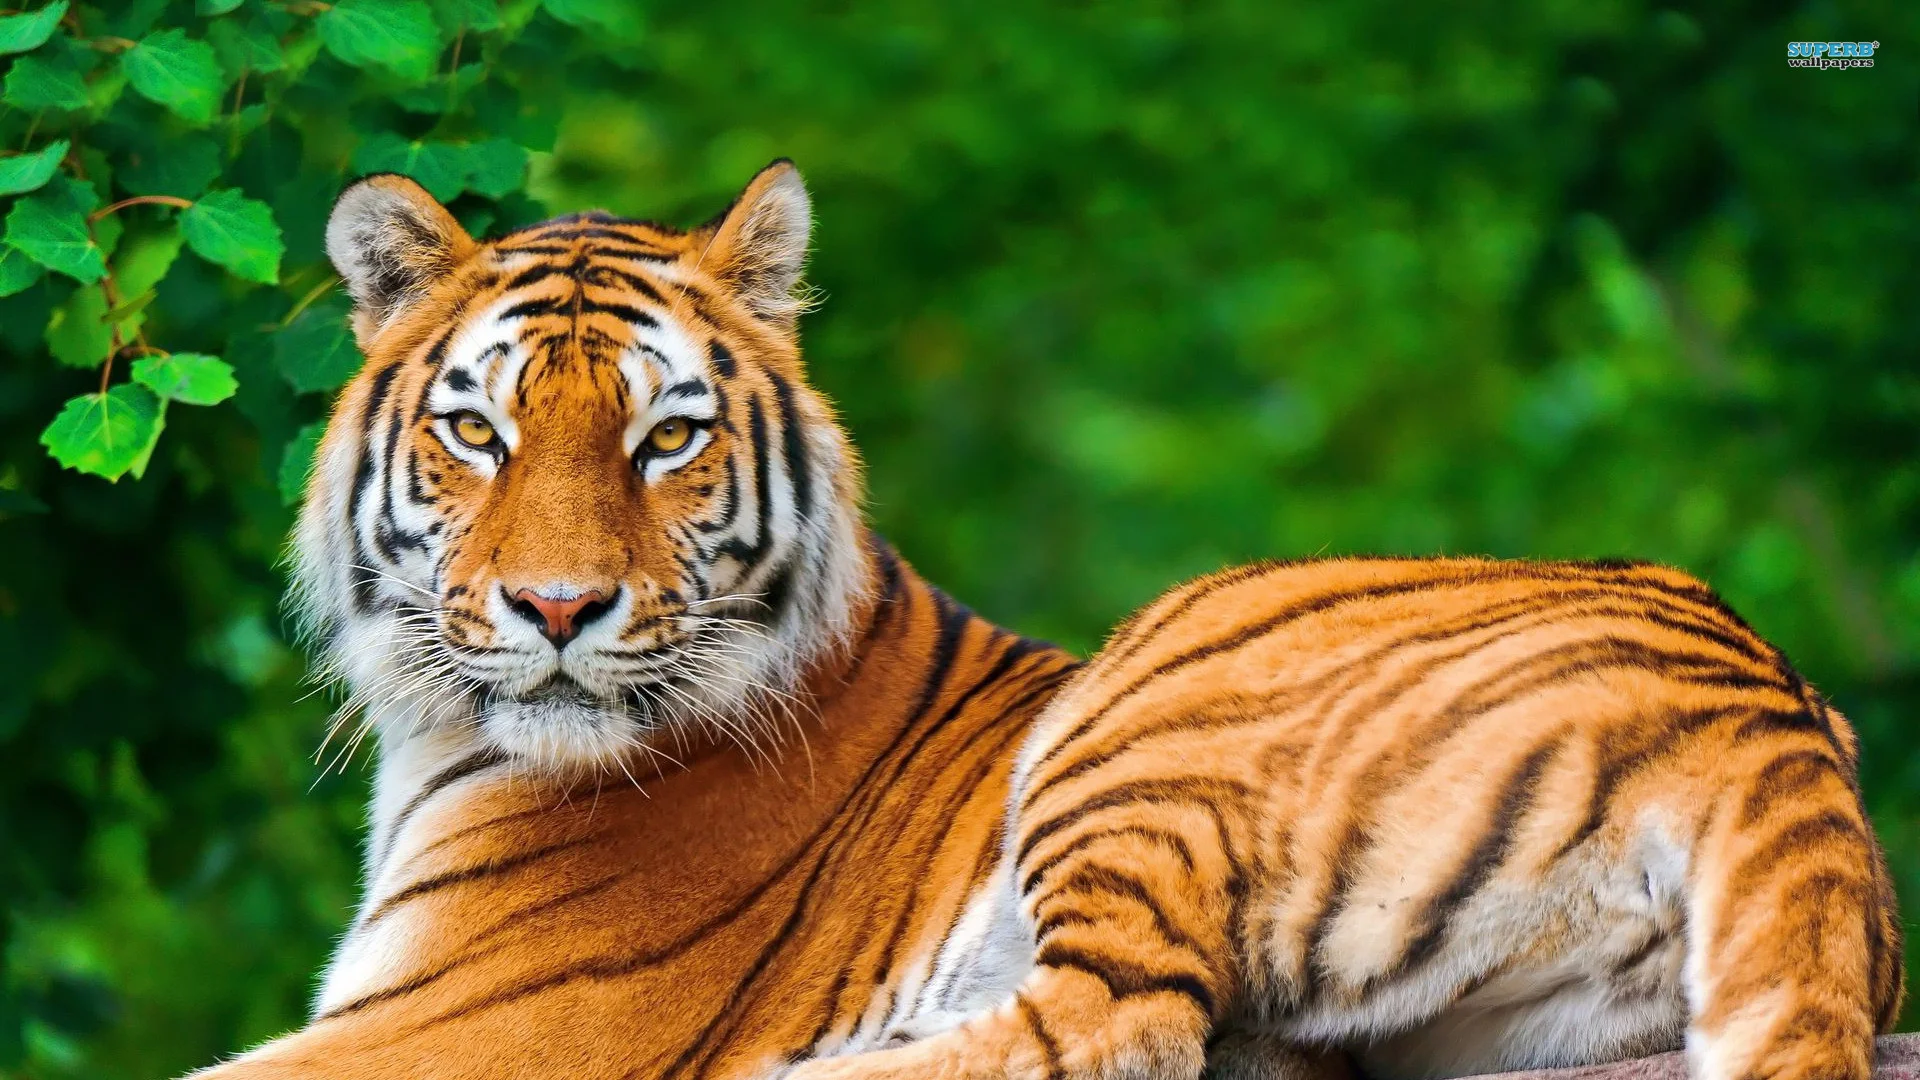 Tiger Animal Wallpaper HD 8 For Desktop Background